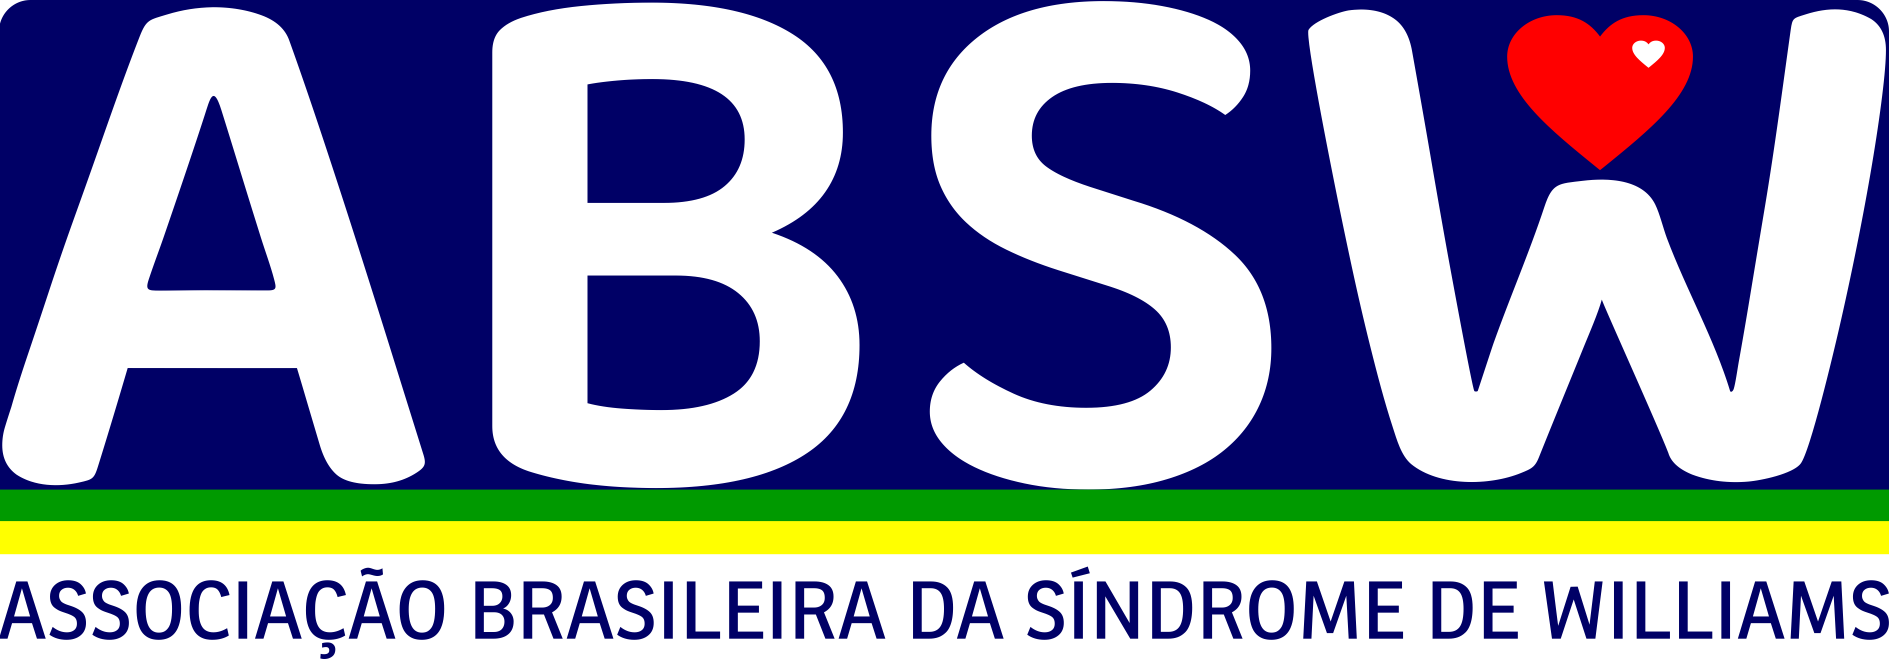 SW Brasil | Website Oficial da Associação Brasileira da Síndrome de Williams